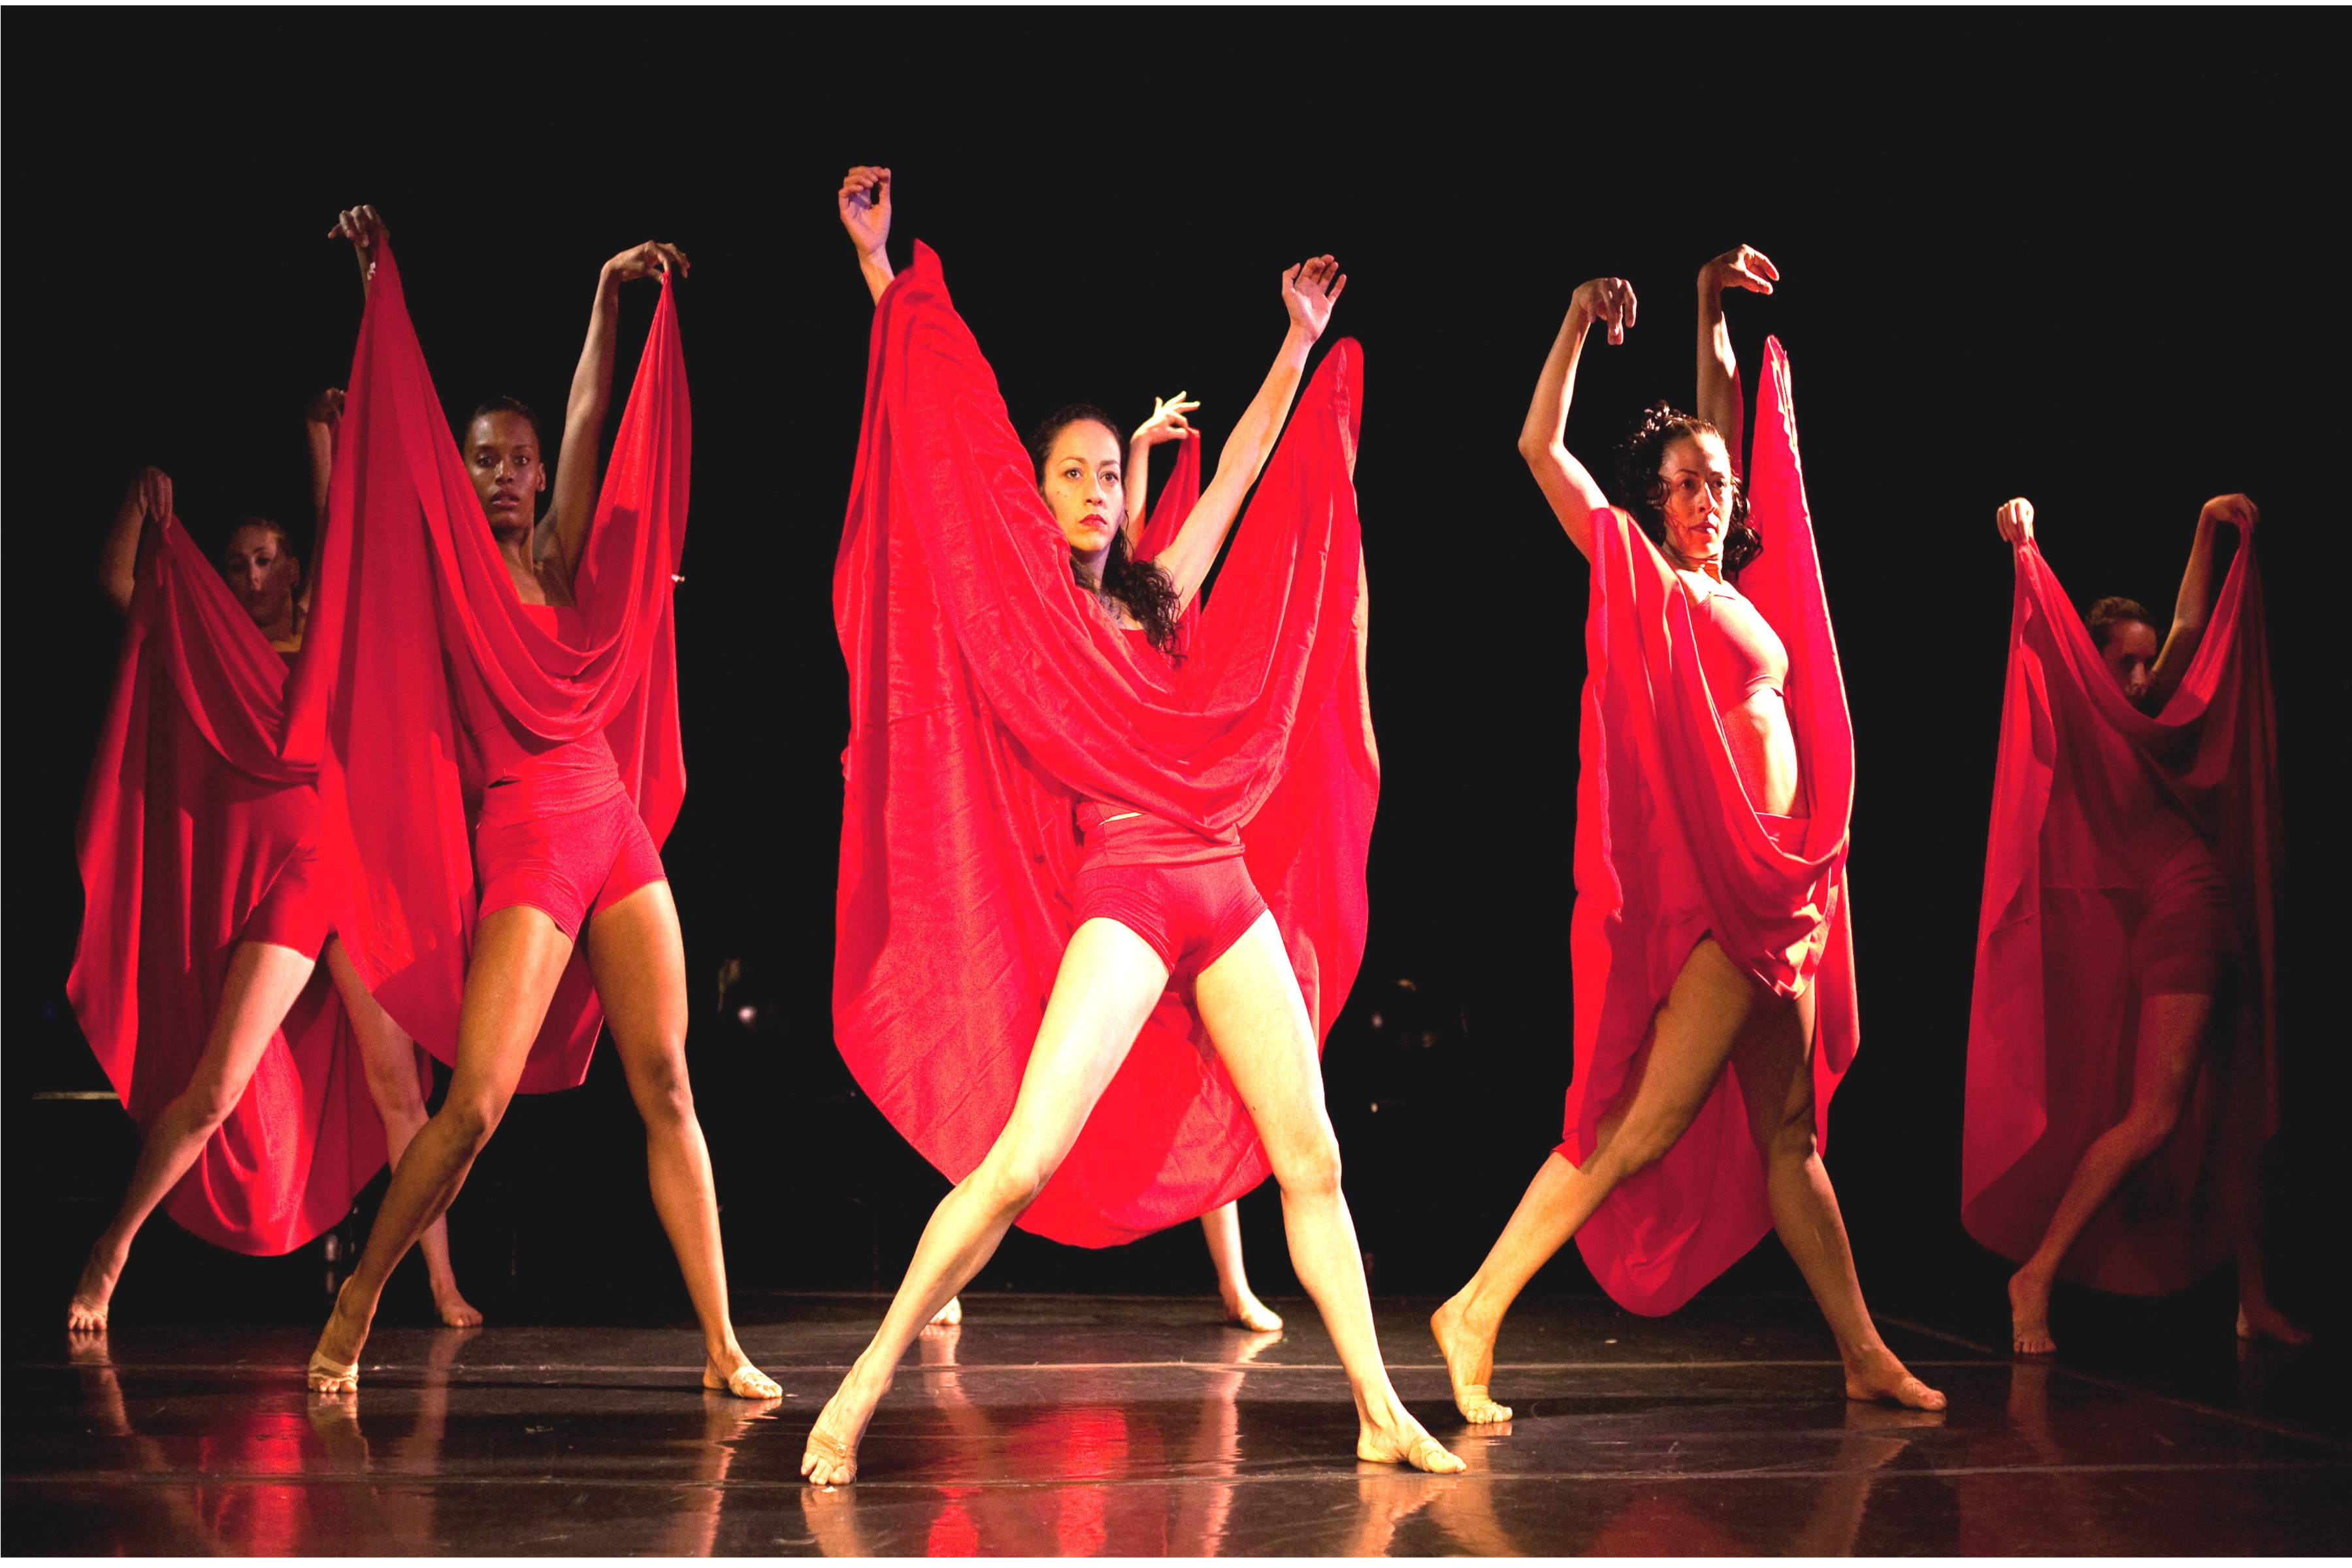 Labayen Dance/SF revisits Carl Orff’s iconic Carmina Burana